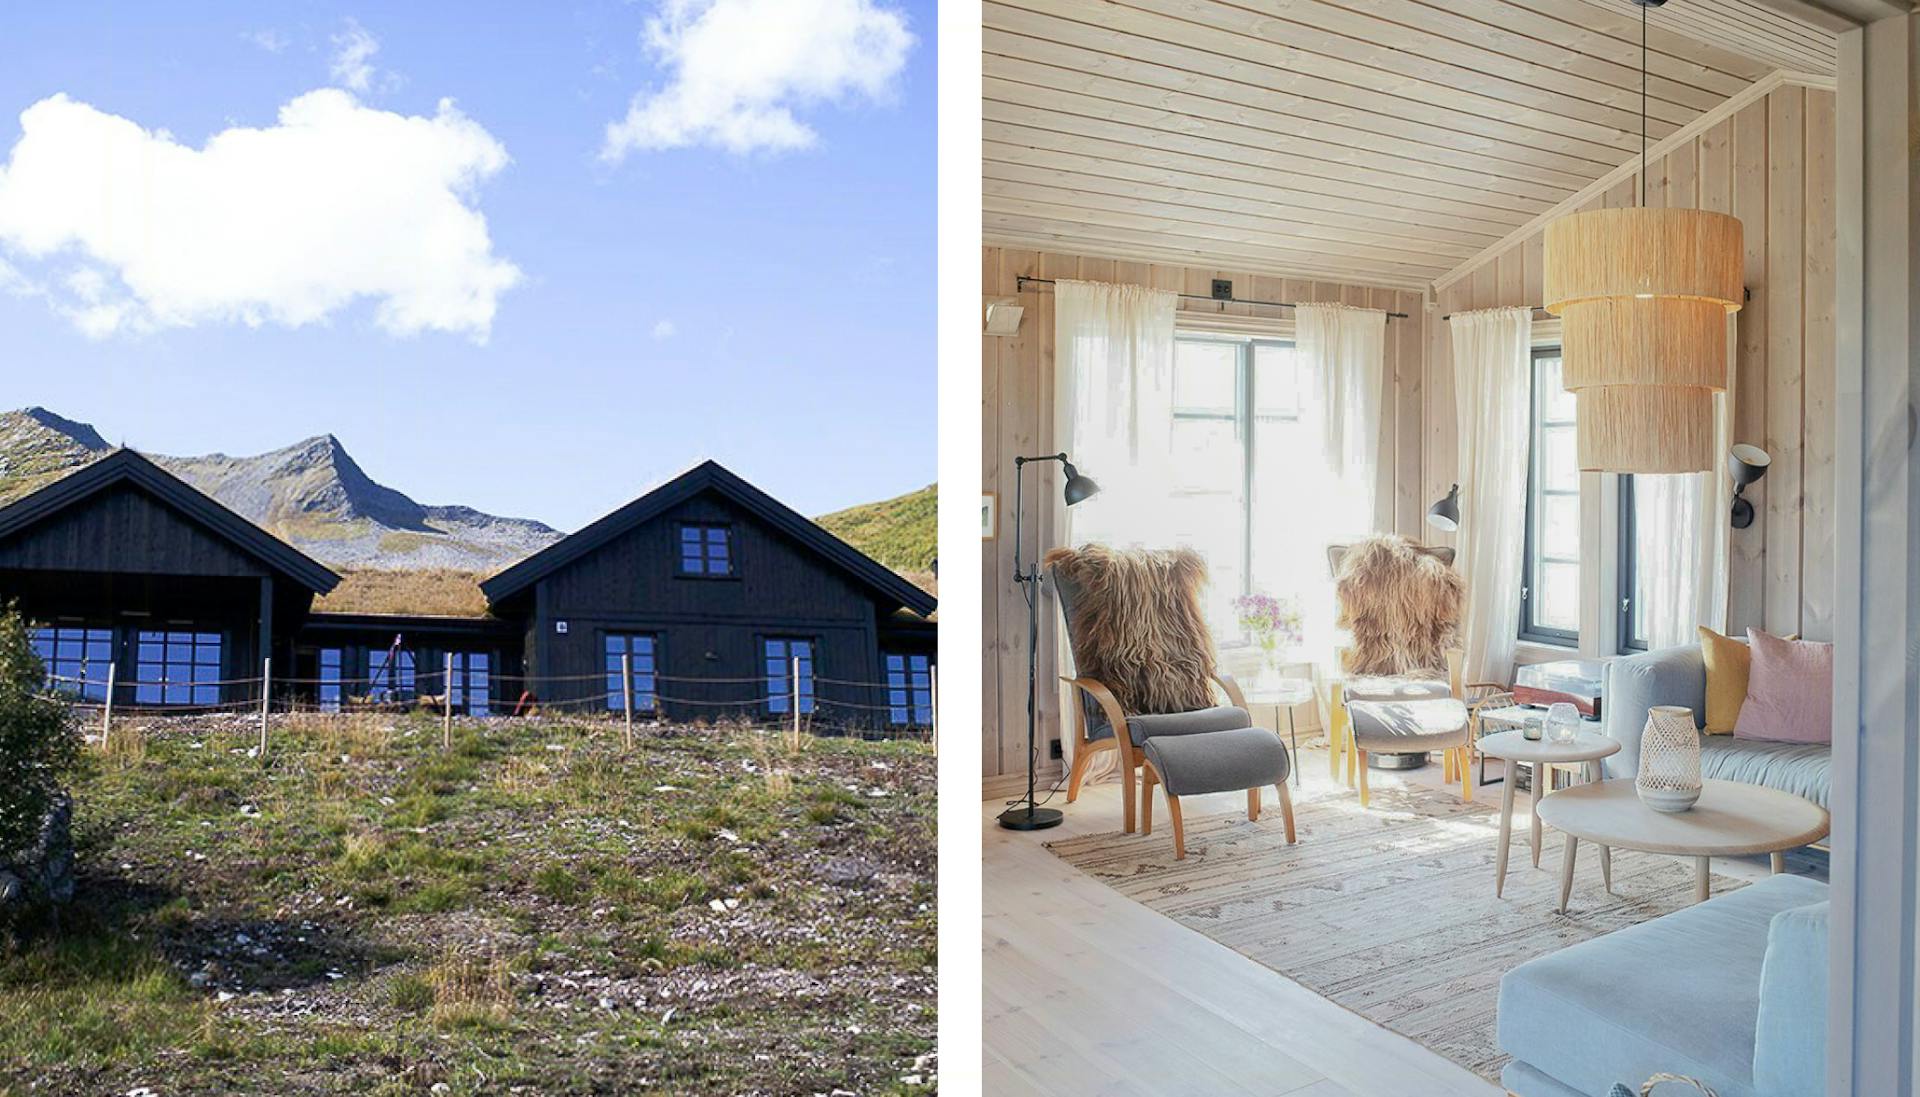 Hytteutleie av en rolig innredet hytte med dansk design